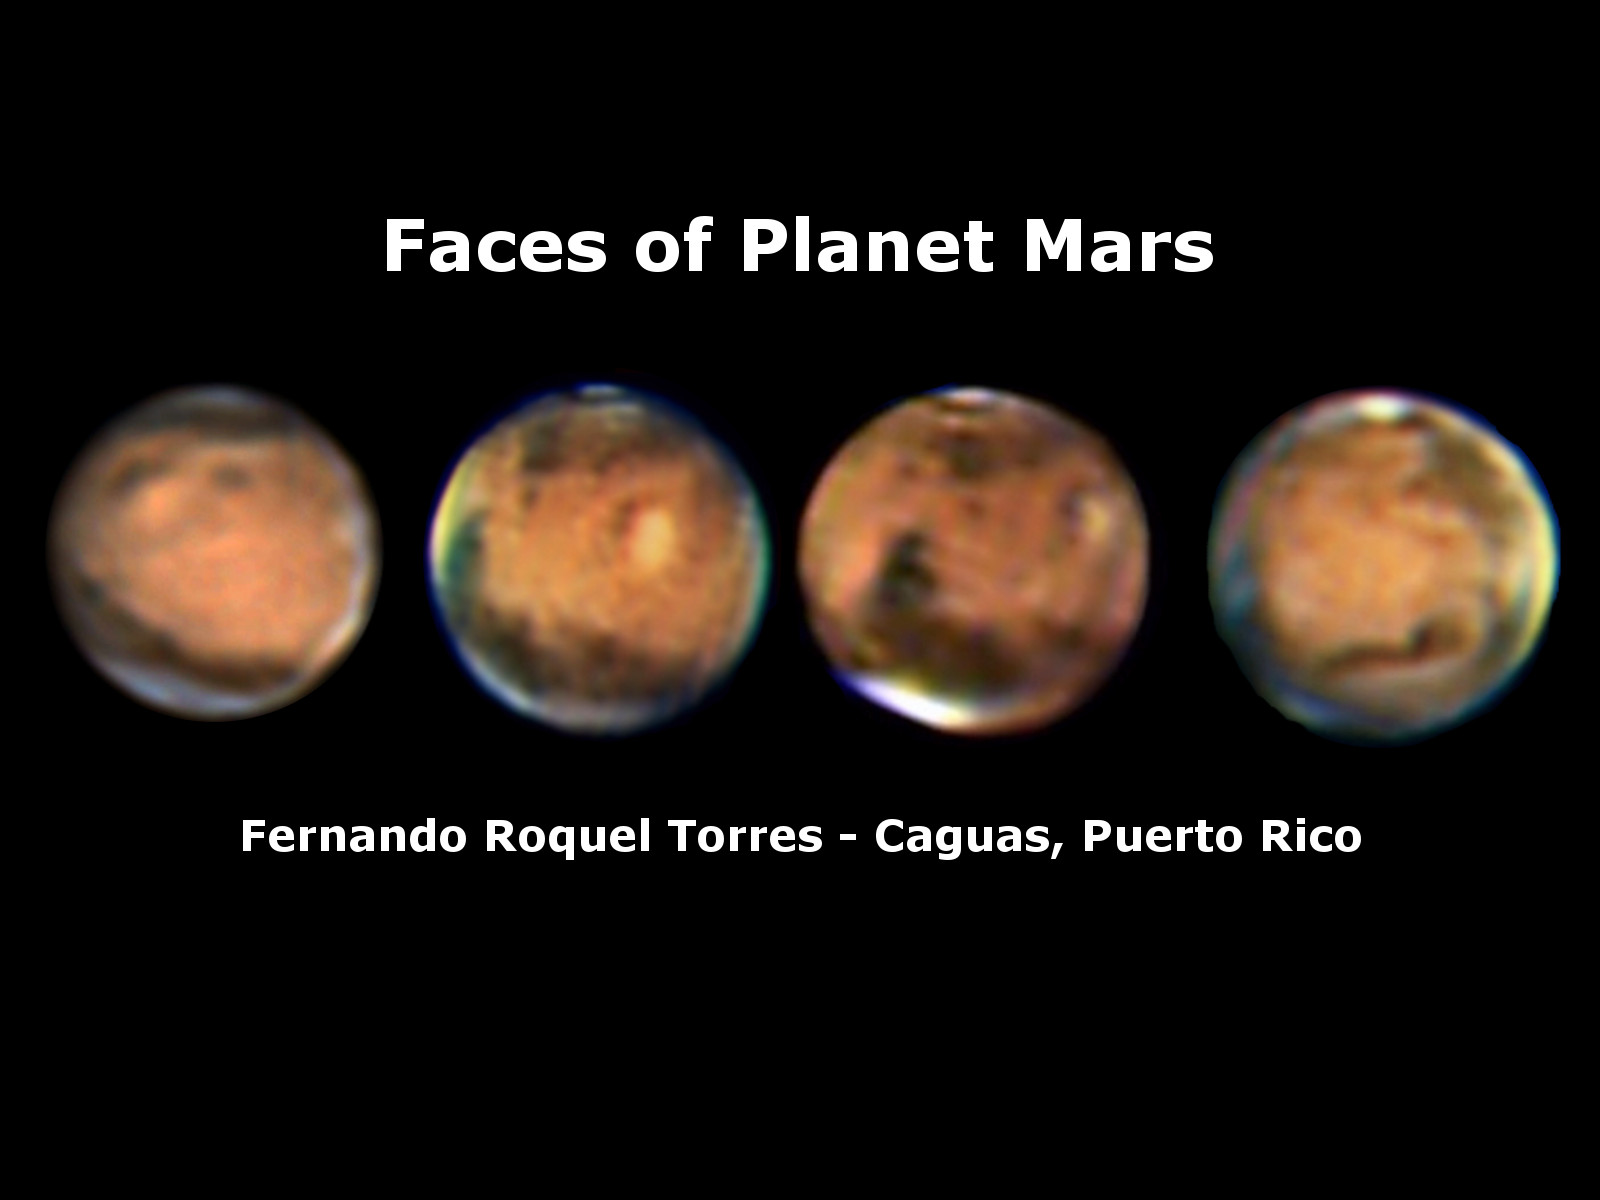 Mars Faces